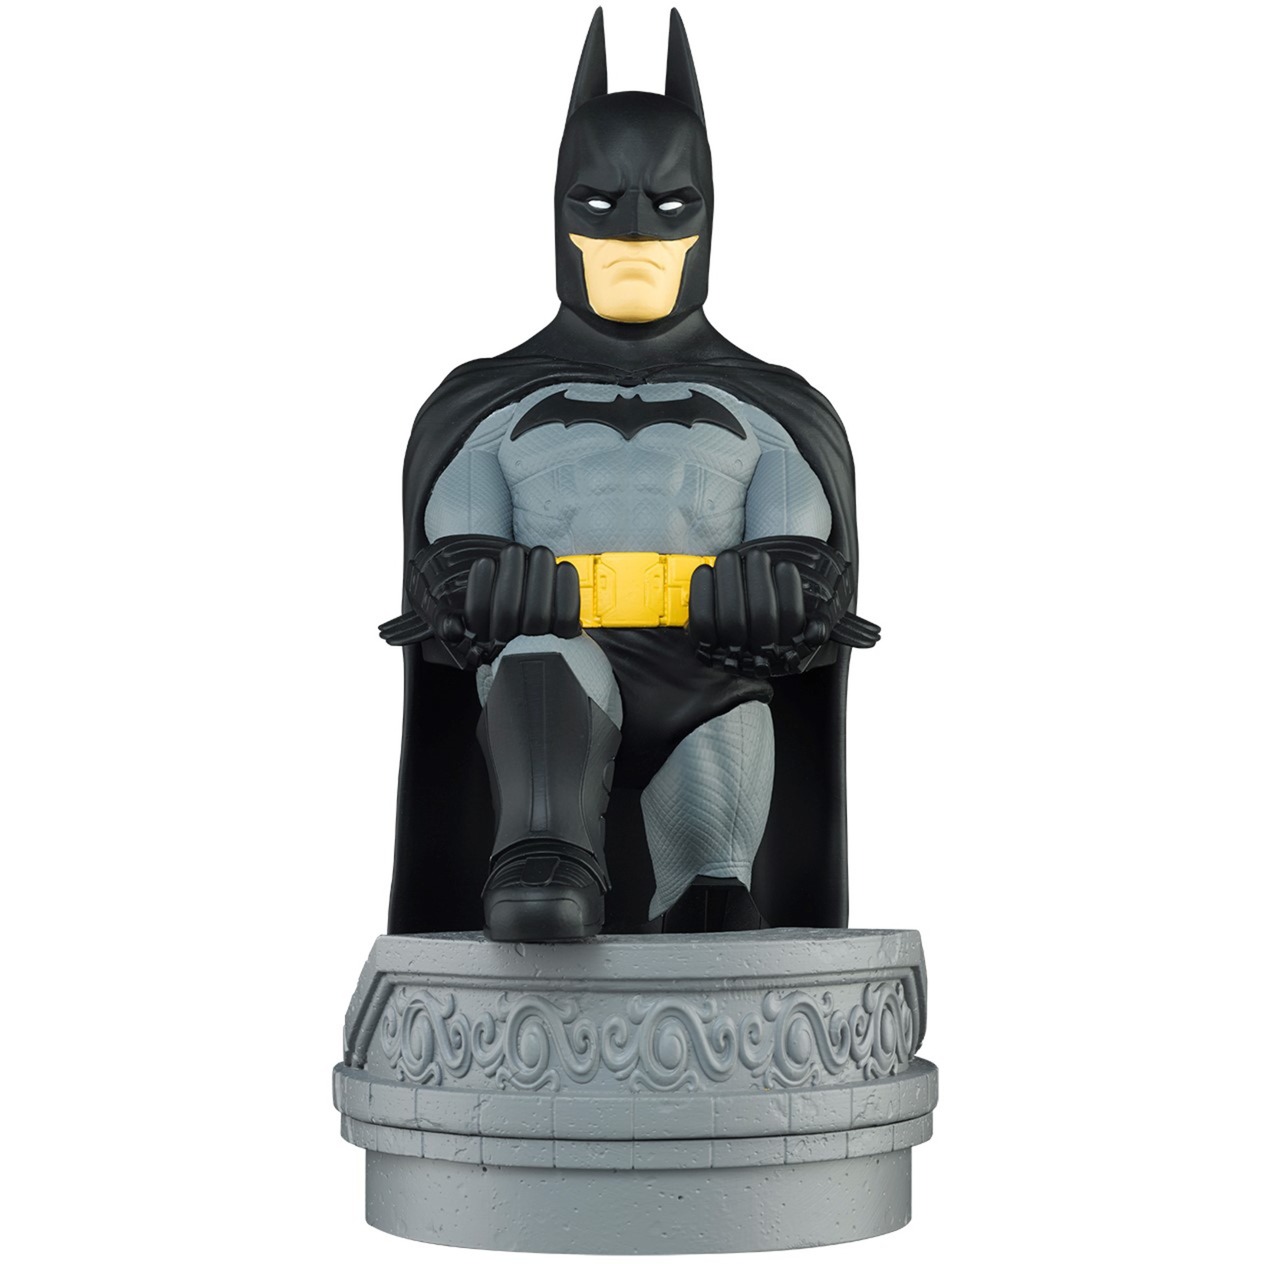 Image of Alternate - Batman, Halterung online einkaufen bei Alternate